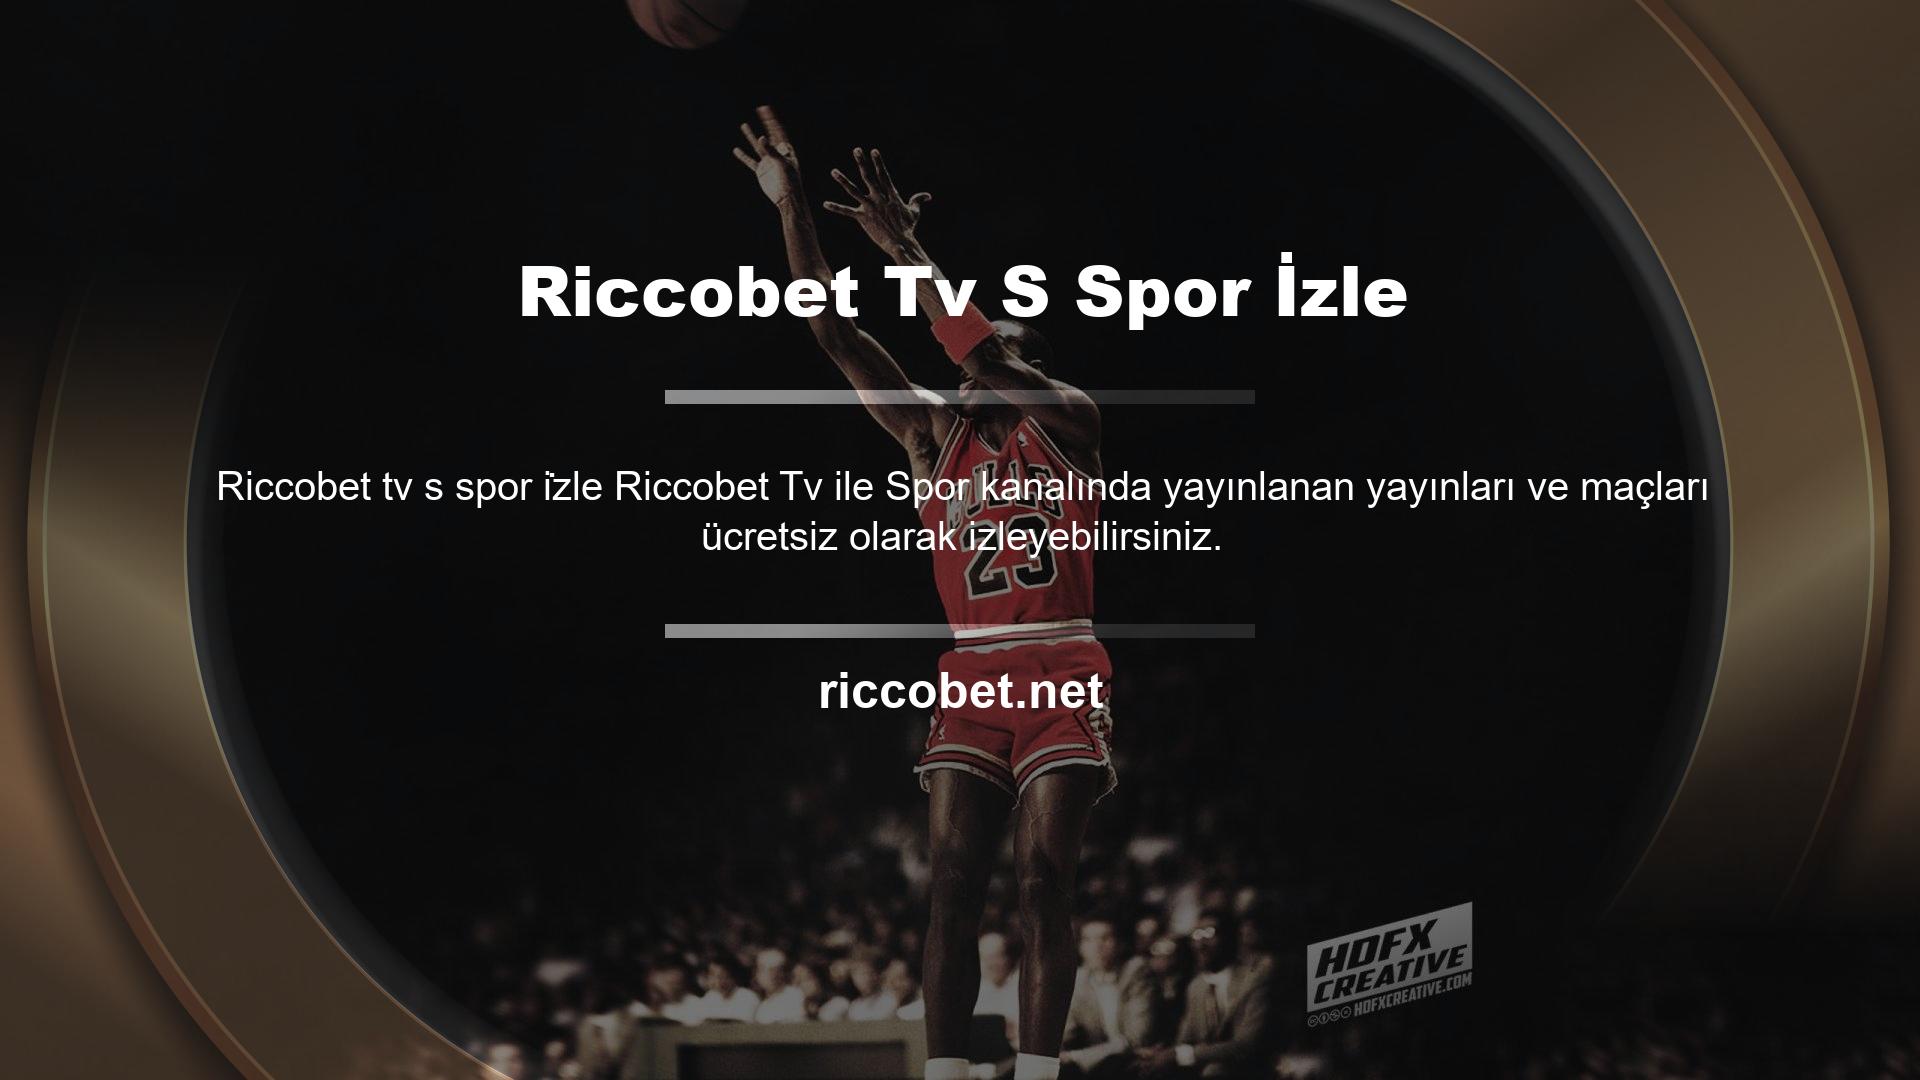 HD kalitede maç yayınları takılma, kesinti sorunu olmadan Riccobet TV'de sizlerle buluşuyor